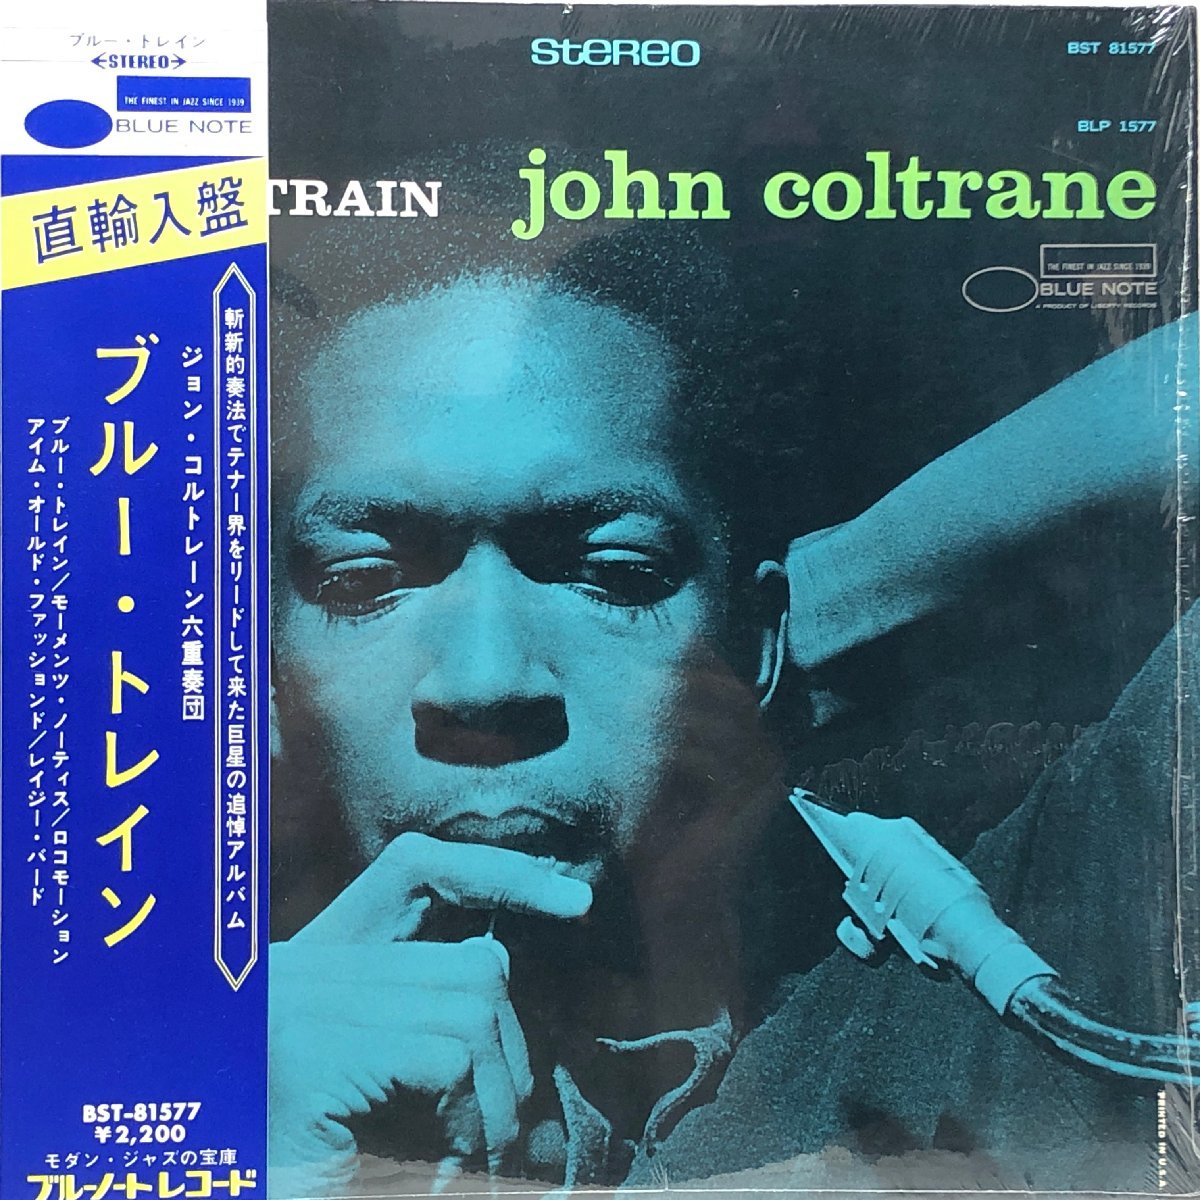 【ジョン・コルトレーン:ブルー・トレイン】のレコード出張買取実績